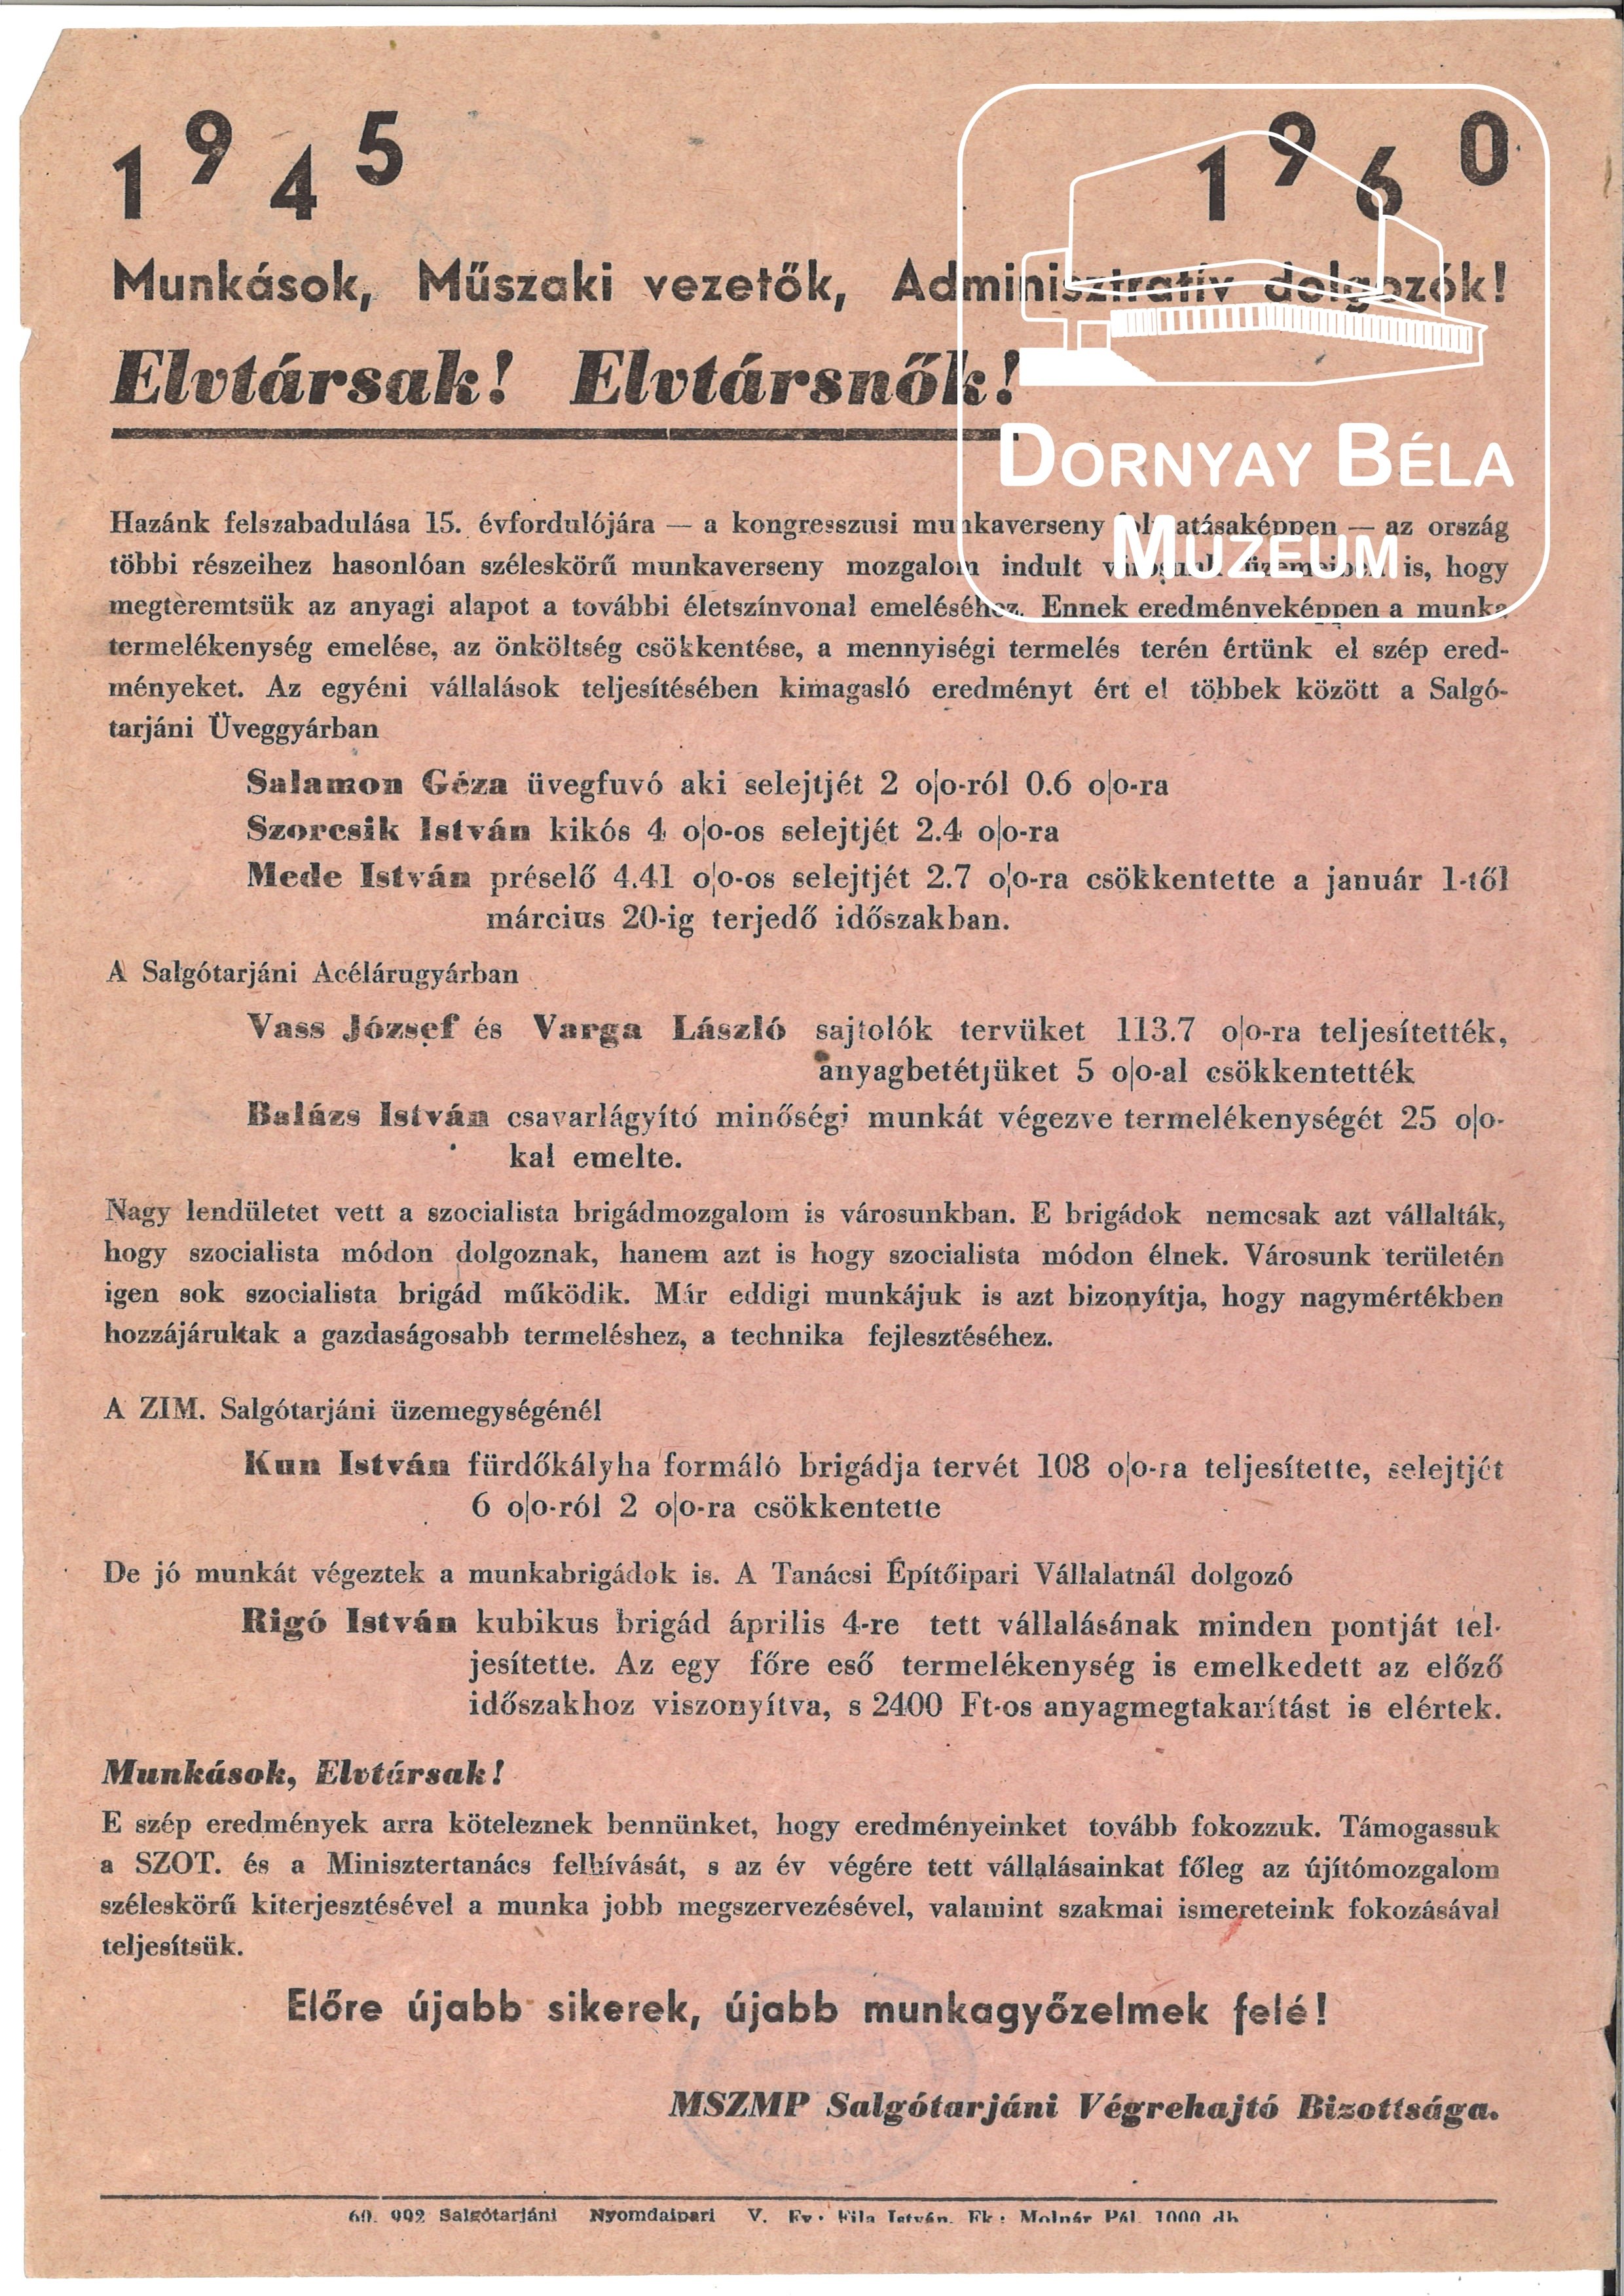 MSZMP Salgótarjáni VB. Felhívása a munkásokhoz, műszaki vezetőkhöz, adm.dolg. (Dornyay Béla Múzeum, Salgótarján CC BY-NC-SA)